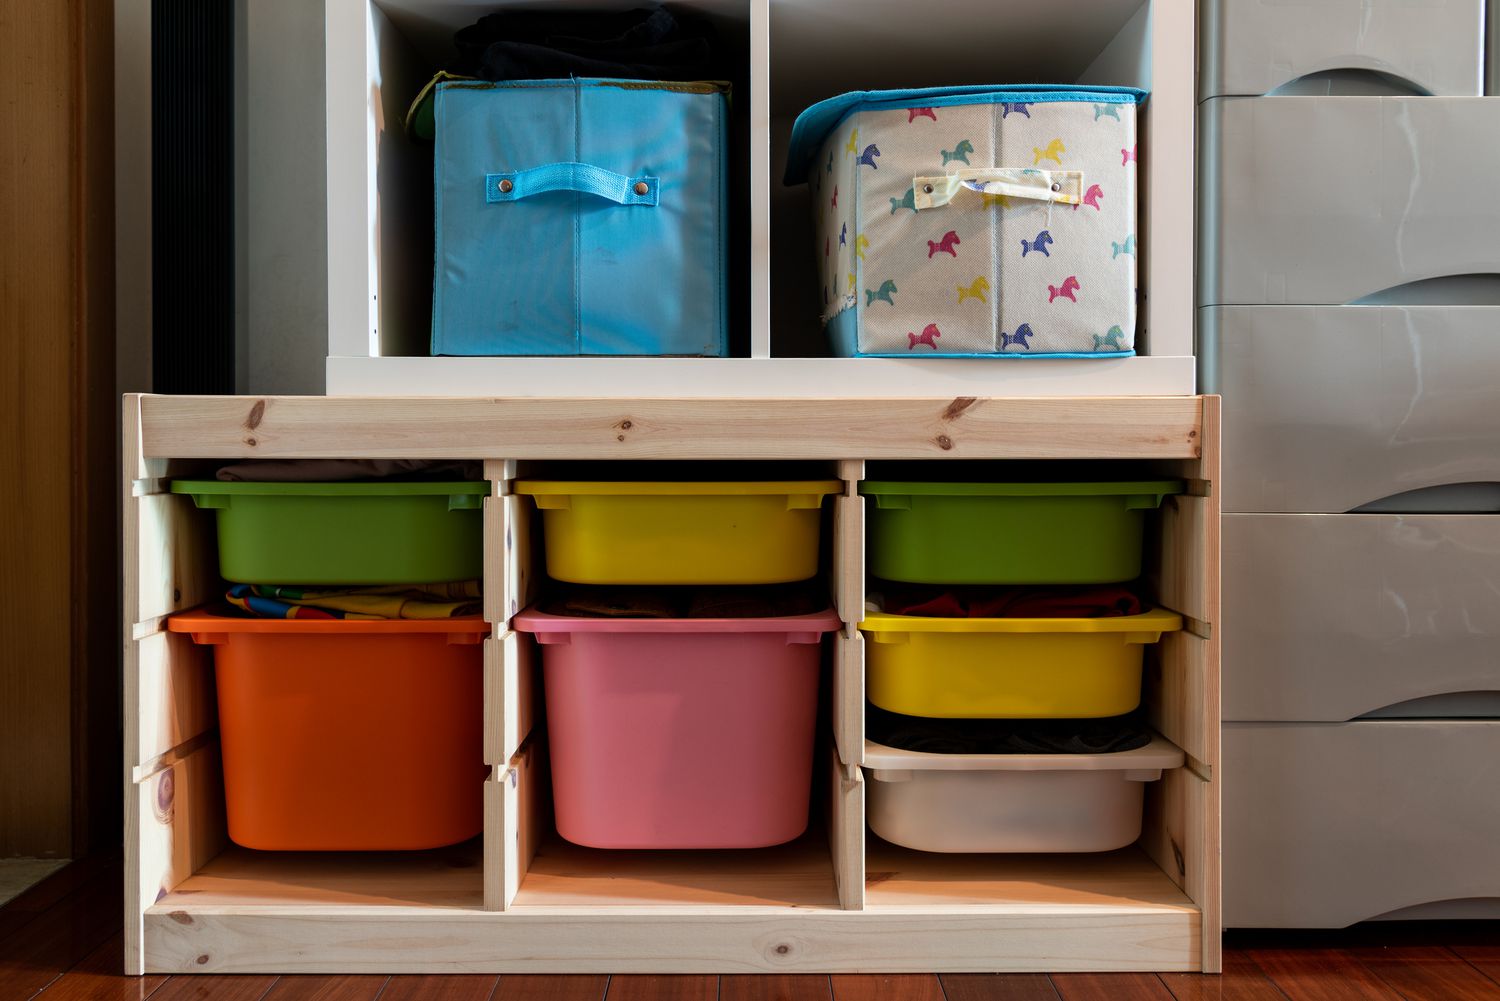 Gavetas coloridas para crianças em um armário.